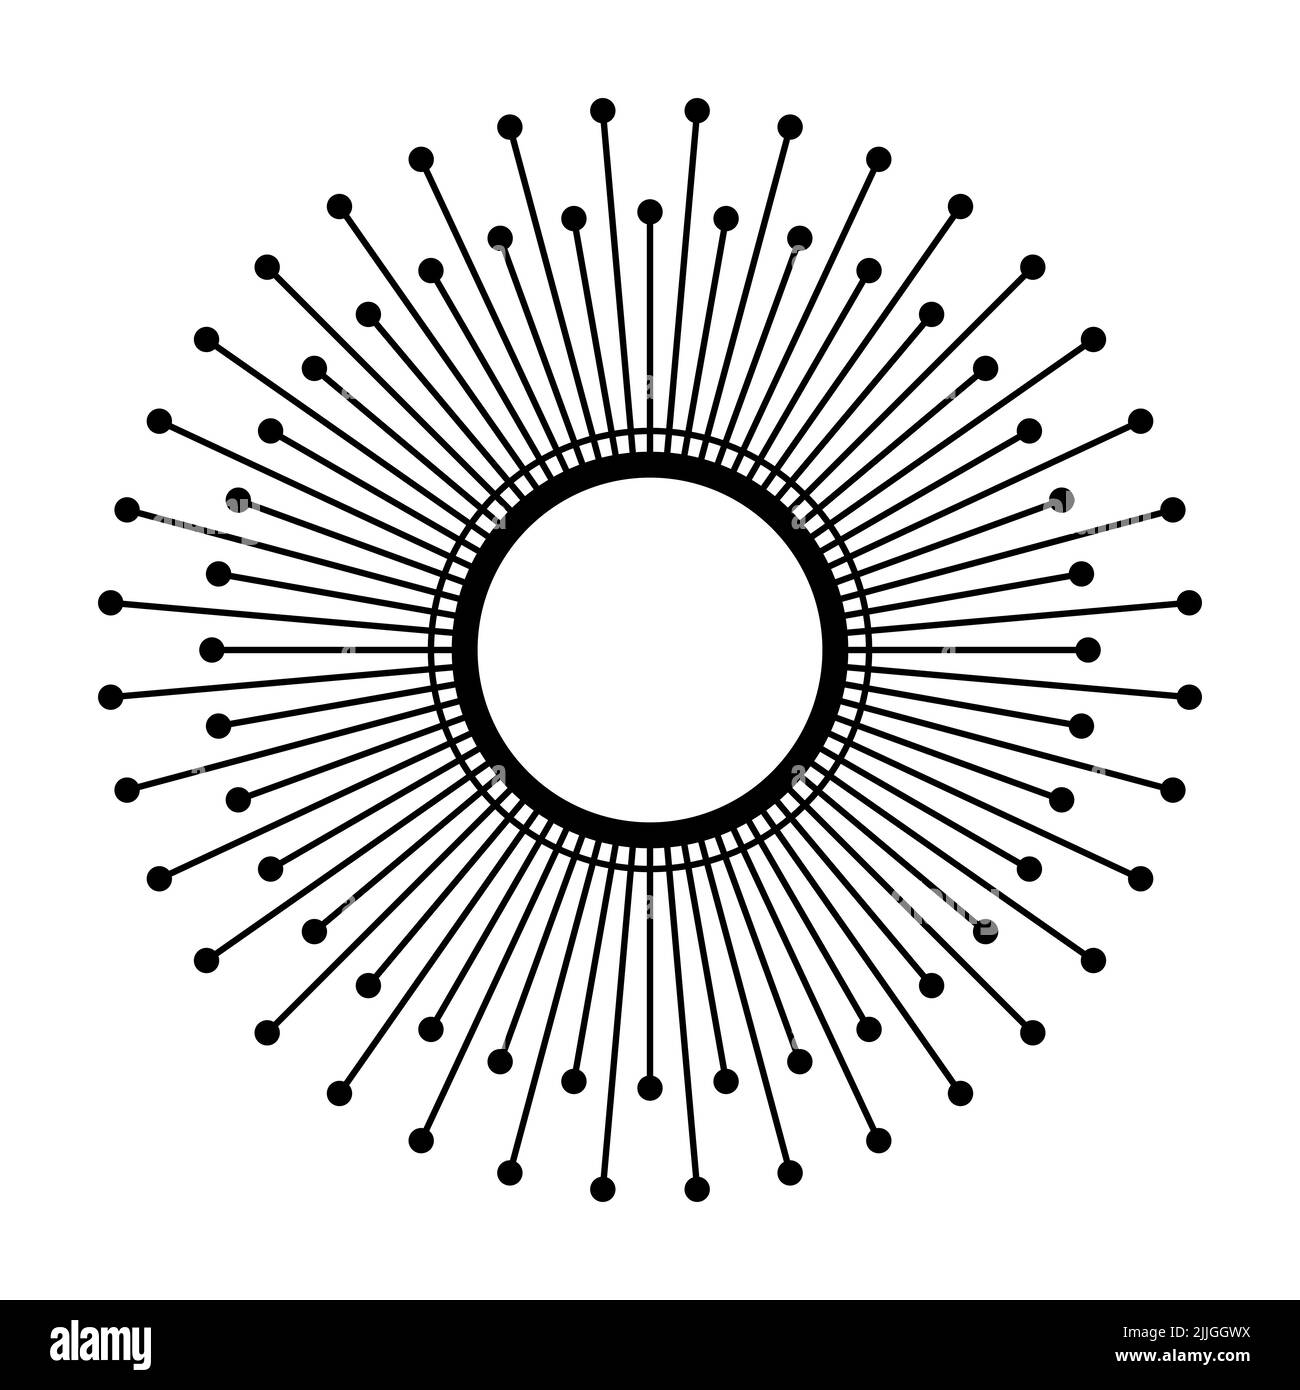 Símbolo de sol. Disco solar con 72, seis veces doce, rayos de luz, con puntos en cada extremo. Las variaciones del signo se utilizan para una custodia solar. Foto de stock